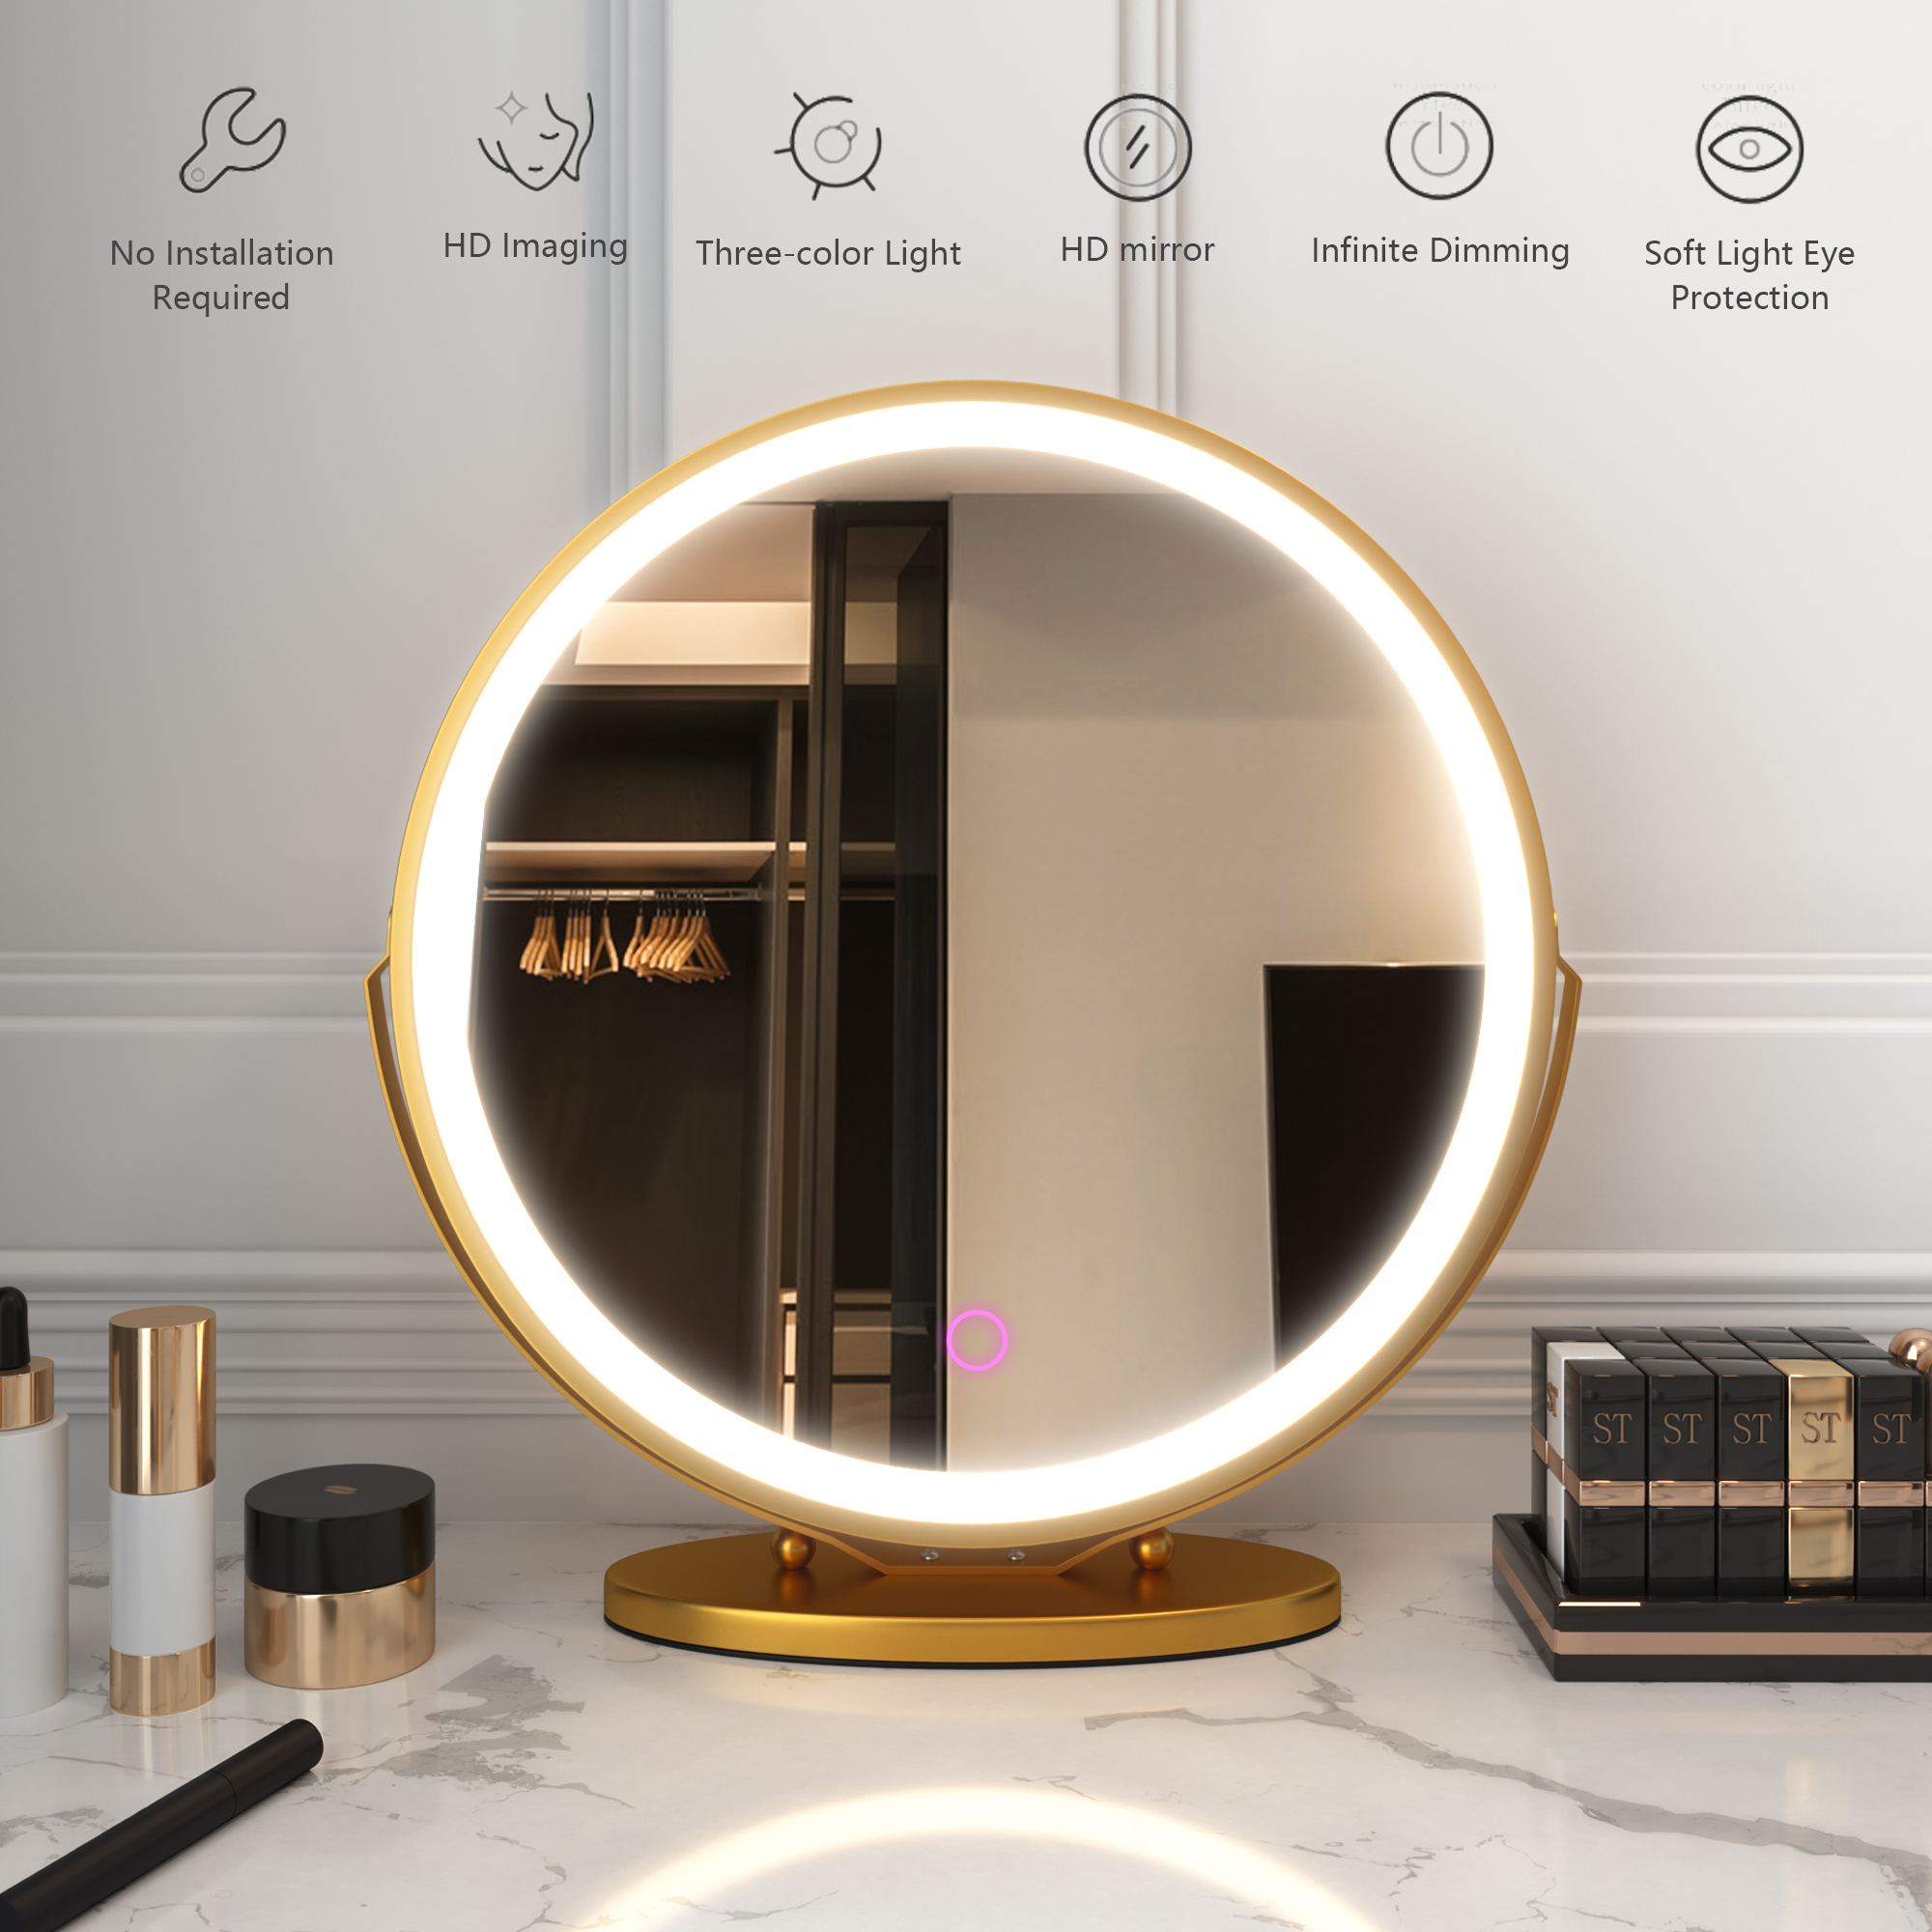 LVSOMT LED Vanity Makeup Mirror